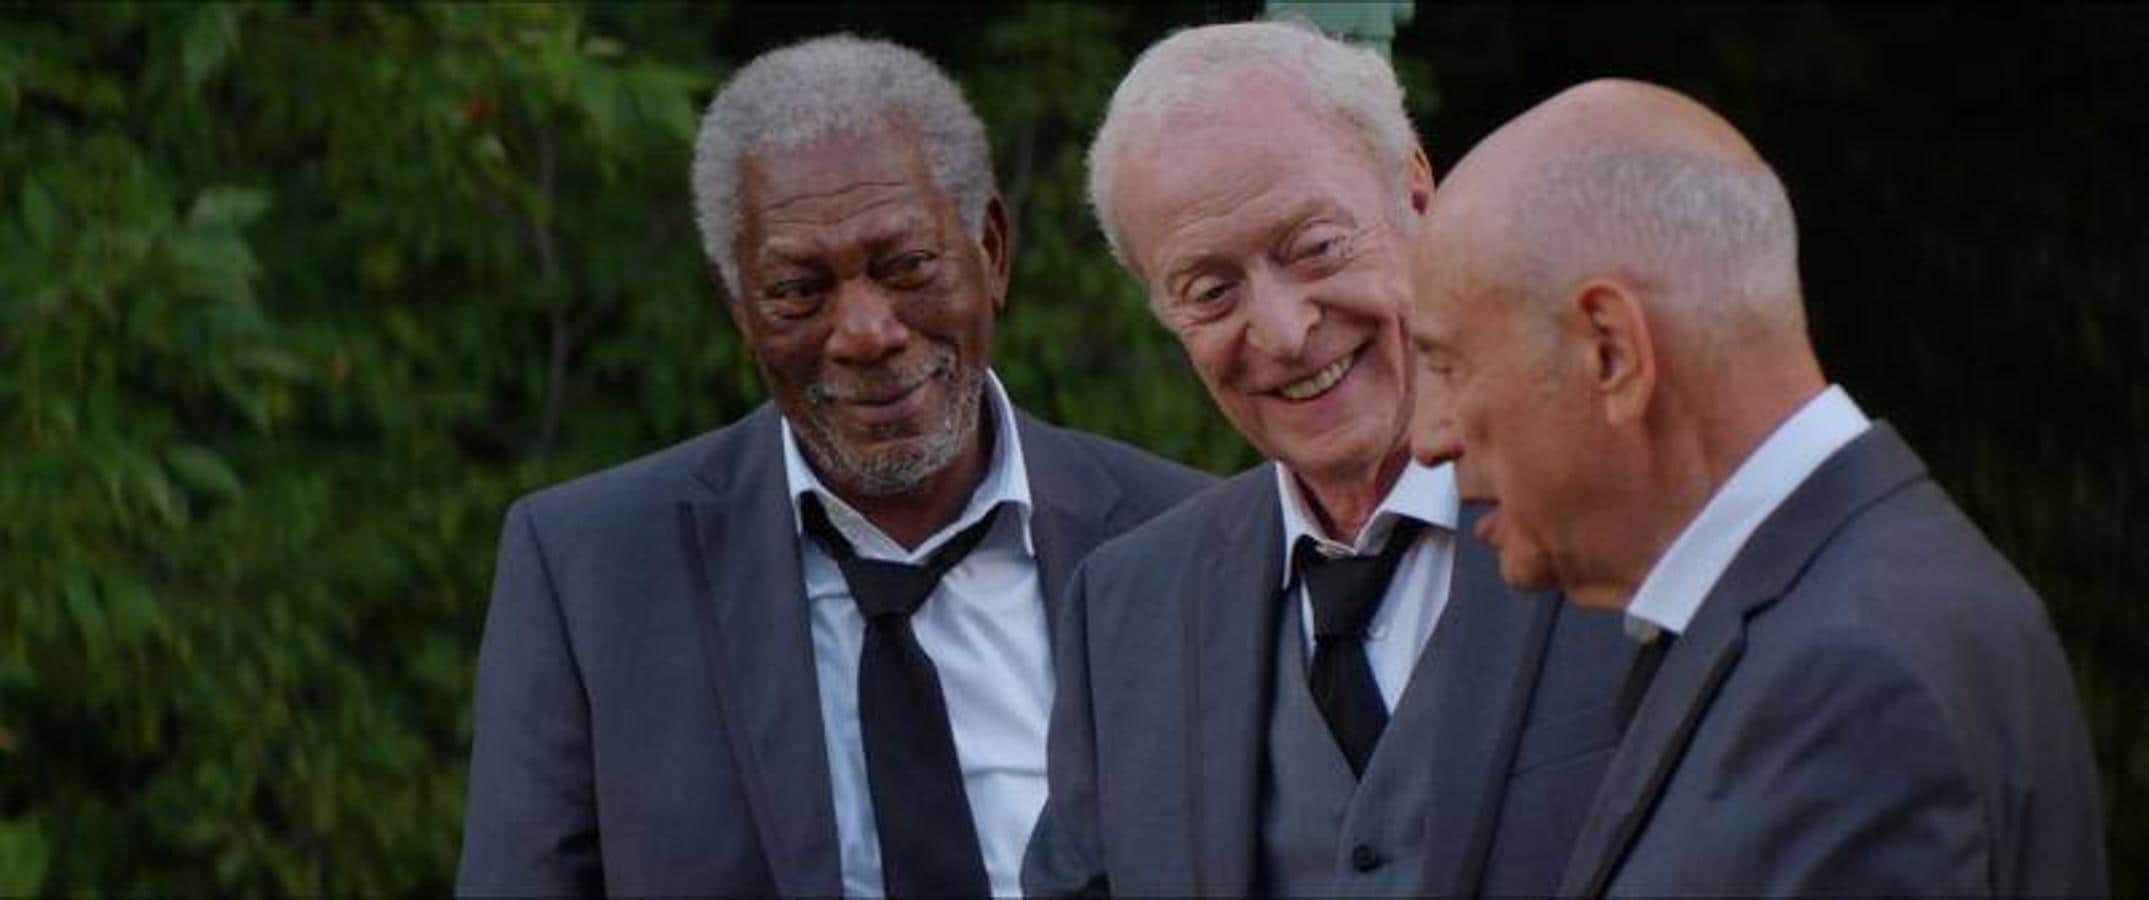 «Un golpe con estilo» (2017). Morgan Freeman, Michael Caine y Alan Arkin protagonizaron en 2017 «Un golpe con estilo», una comedia sobre tres jubilados que deciden atracar un banco